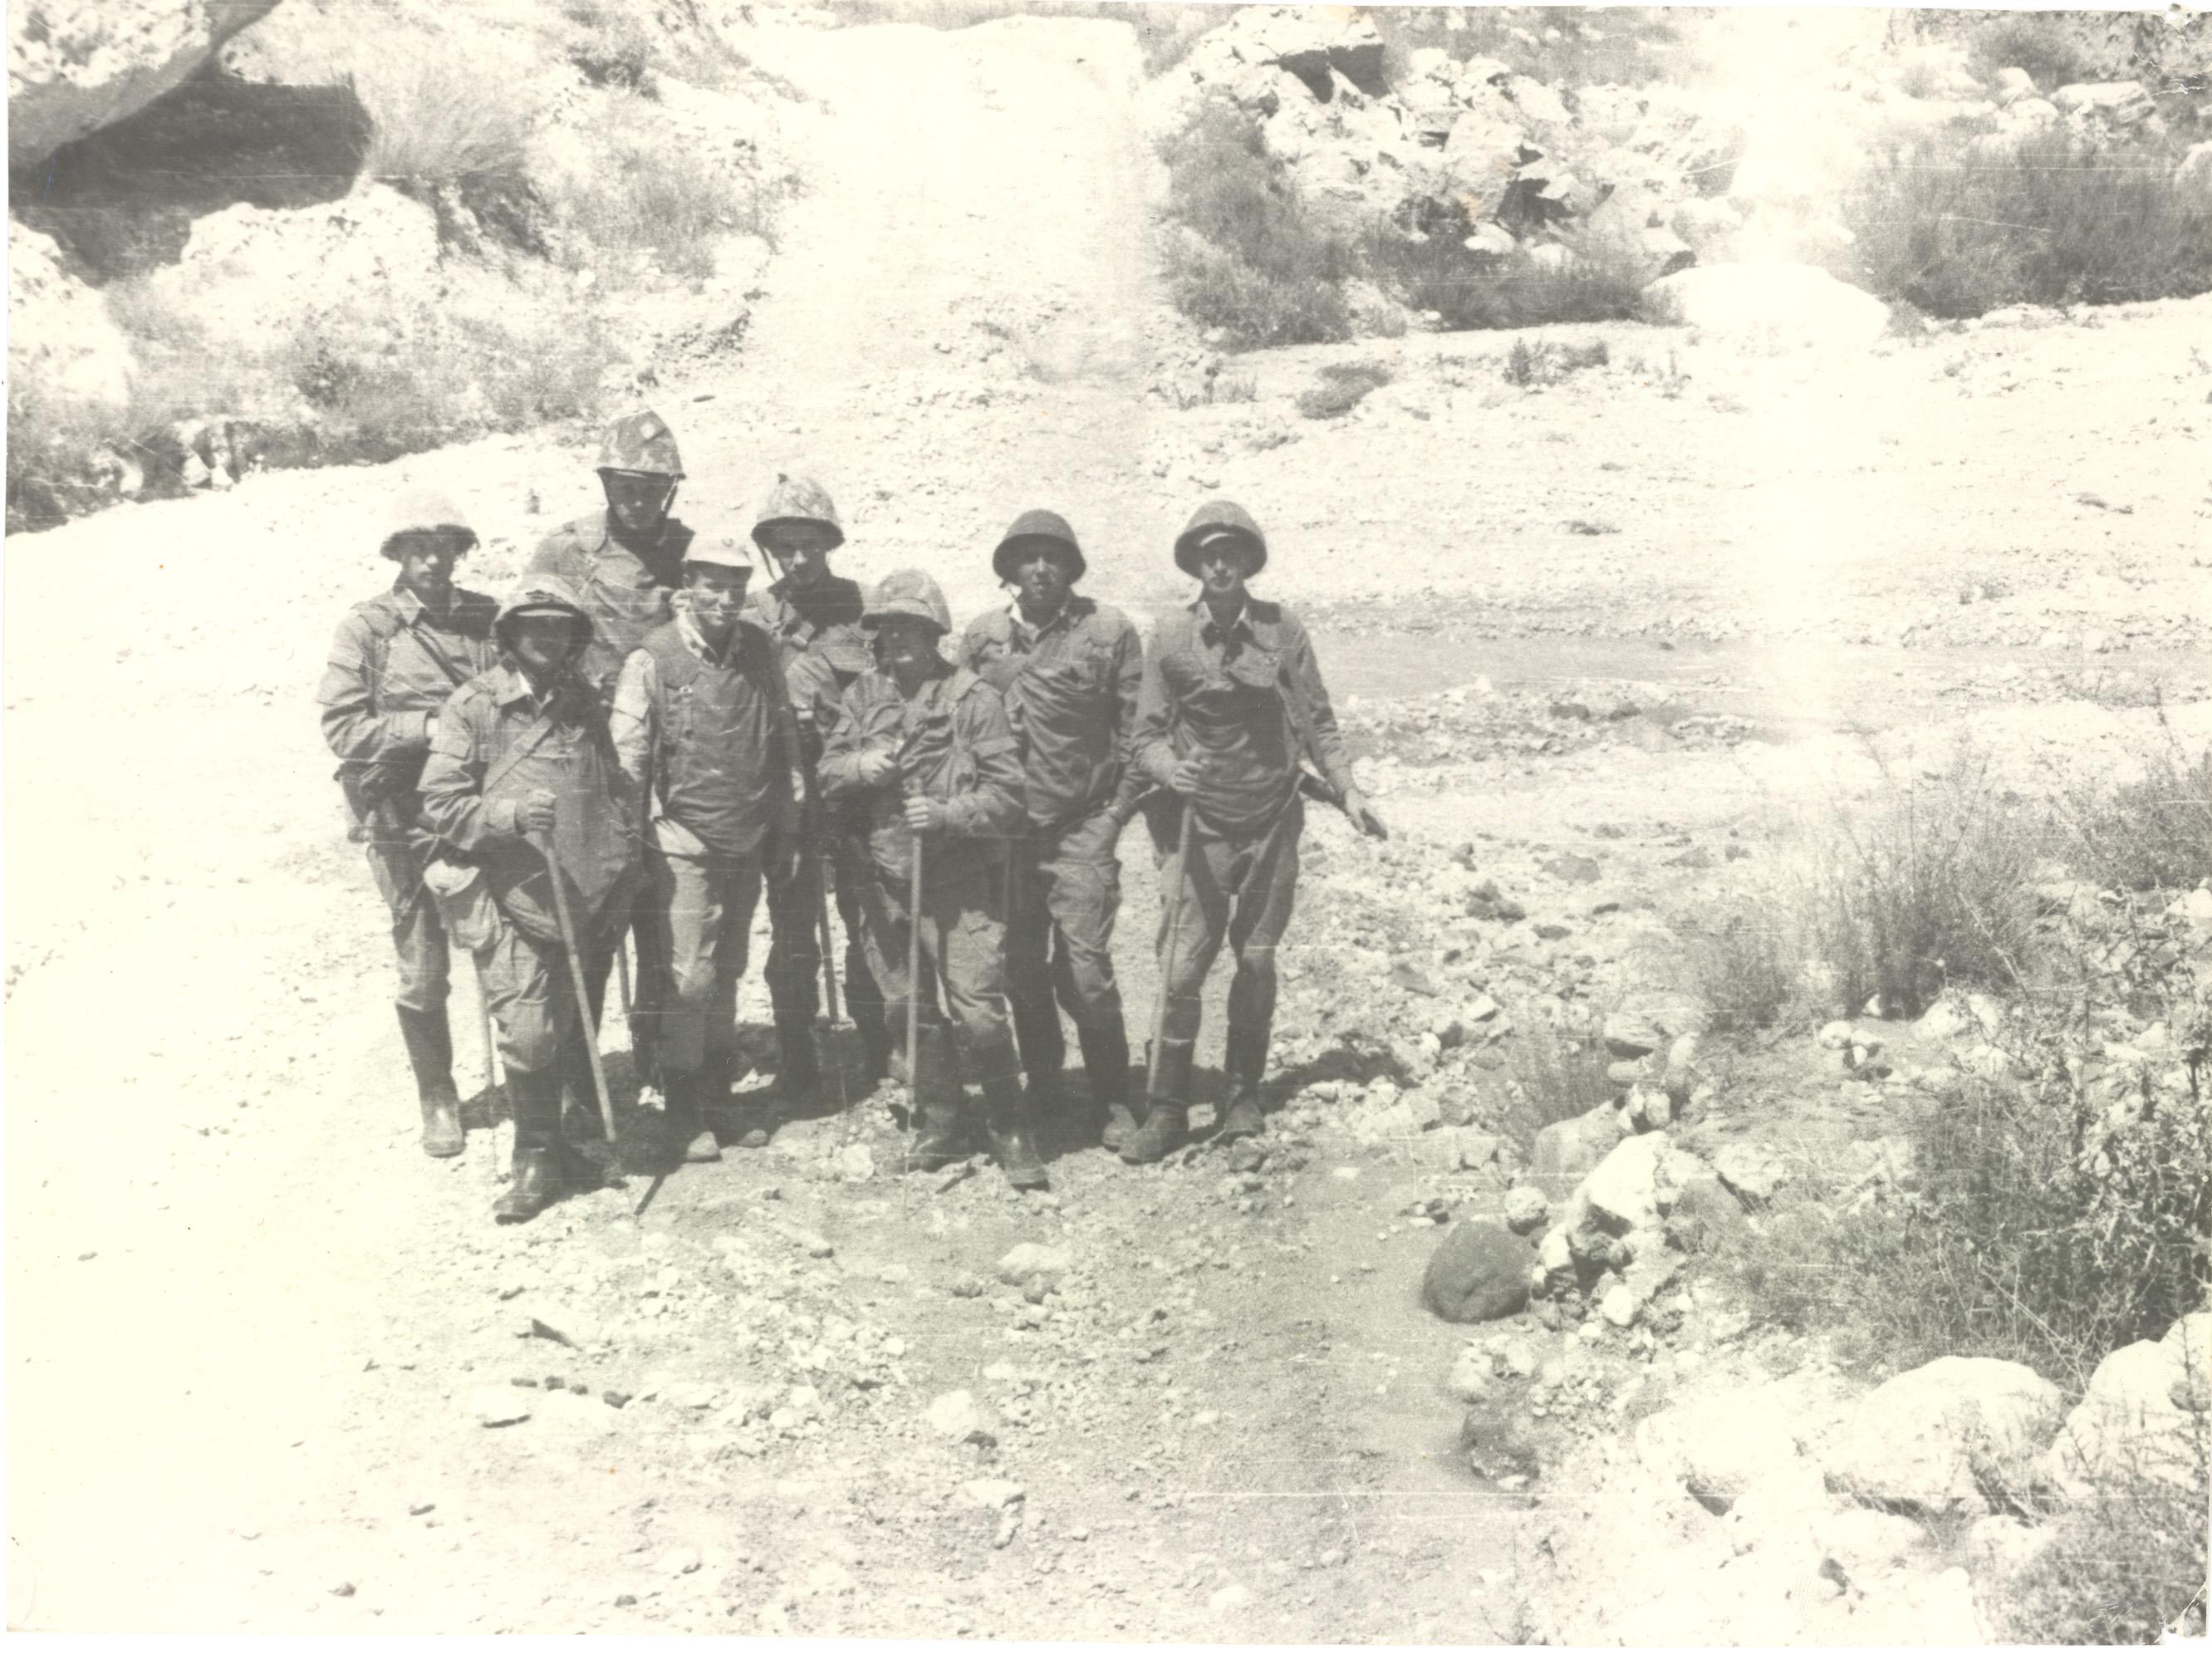 13 мая 1988 г. почти
                      вся эта группа (за исключением крайнего справа
                      пацана) попала в душманскую засаду на серпантине
                      от к. Мармоль к точке "1534". 6 человек
                      погибли, выжил только тяжело раненый
                      командир-прапорщик (на снимке в кепке в центре):